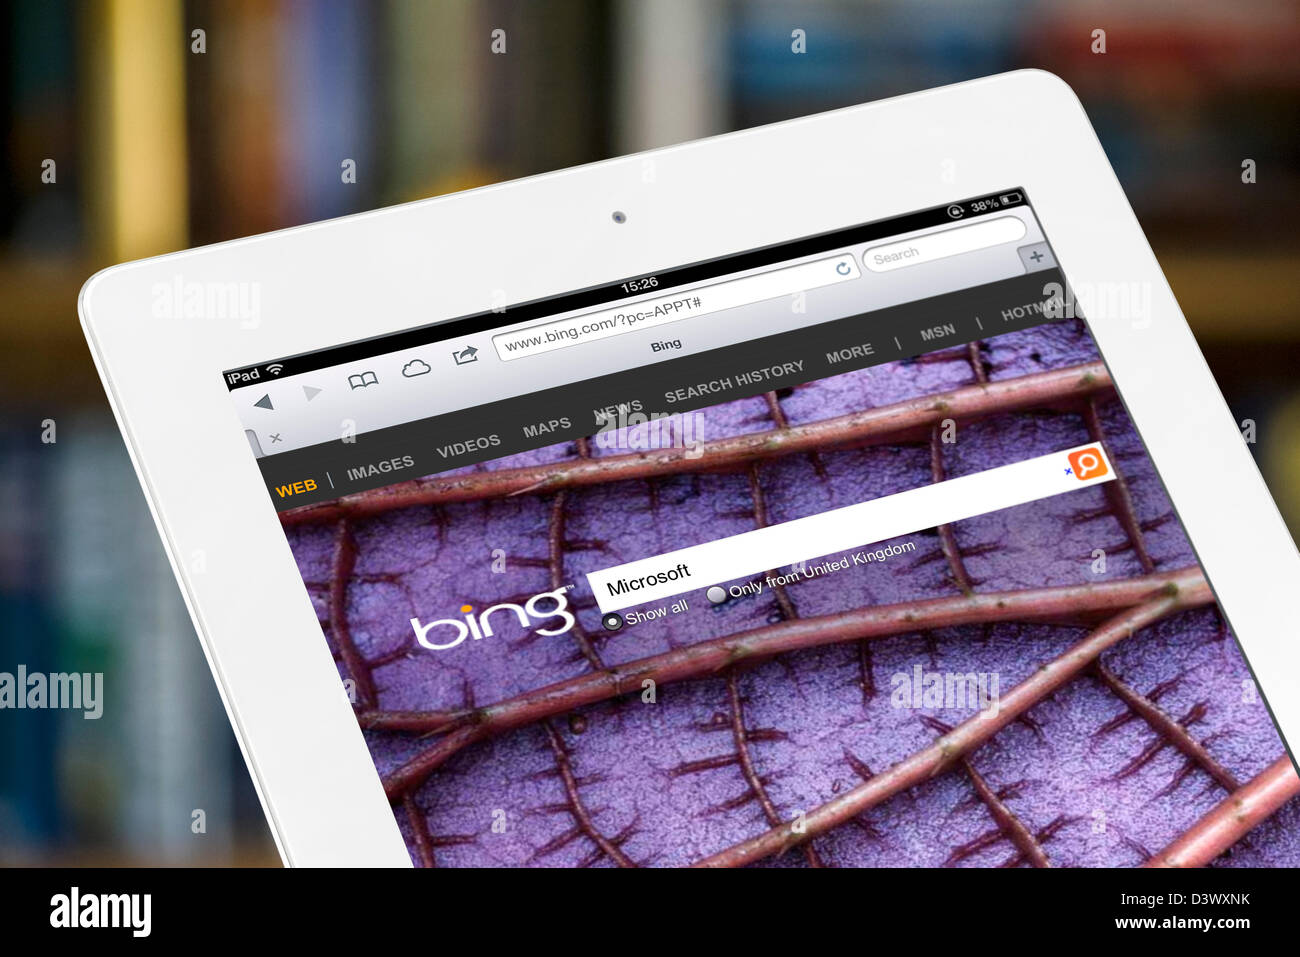 Bing Search sur un iPad 4e génération Banque D'Images